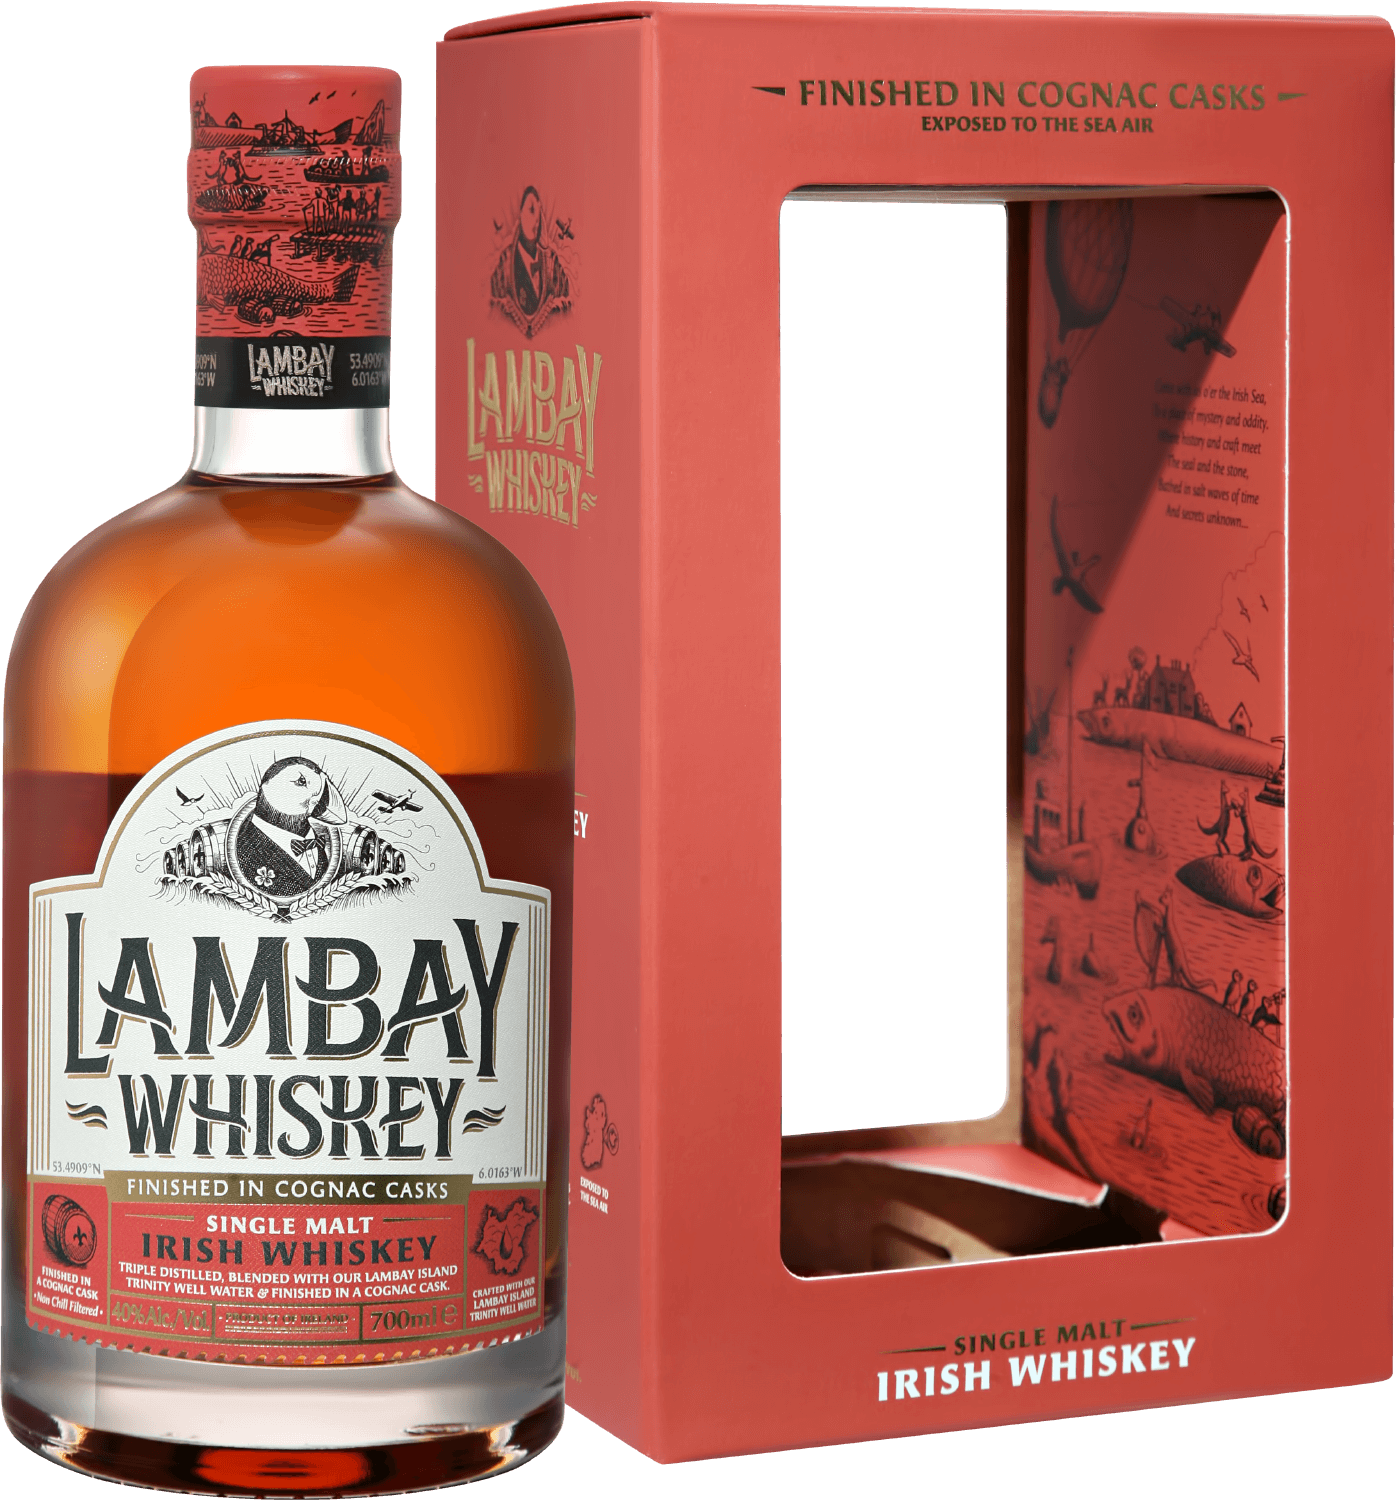 Lambay Single Malt Irish Whiskey 5 y.o. (gift box) the sexton single malt irish whiskey